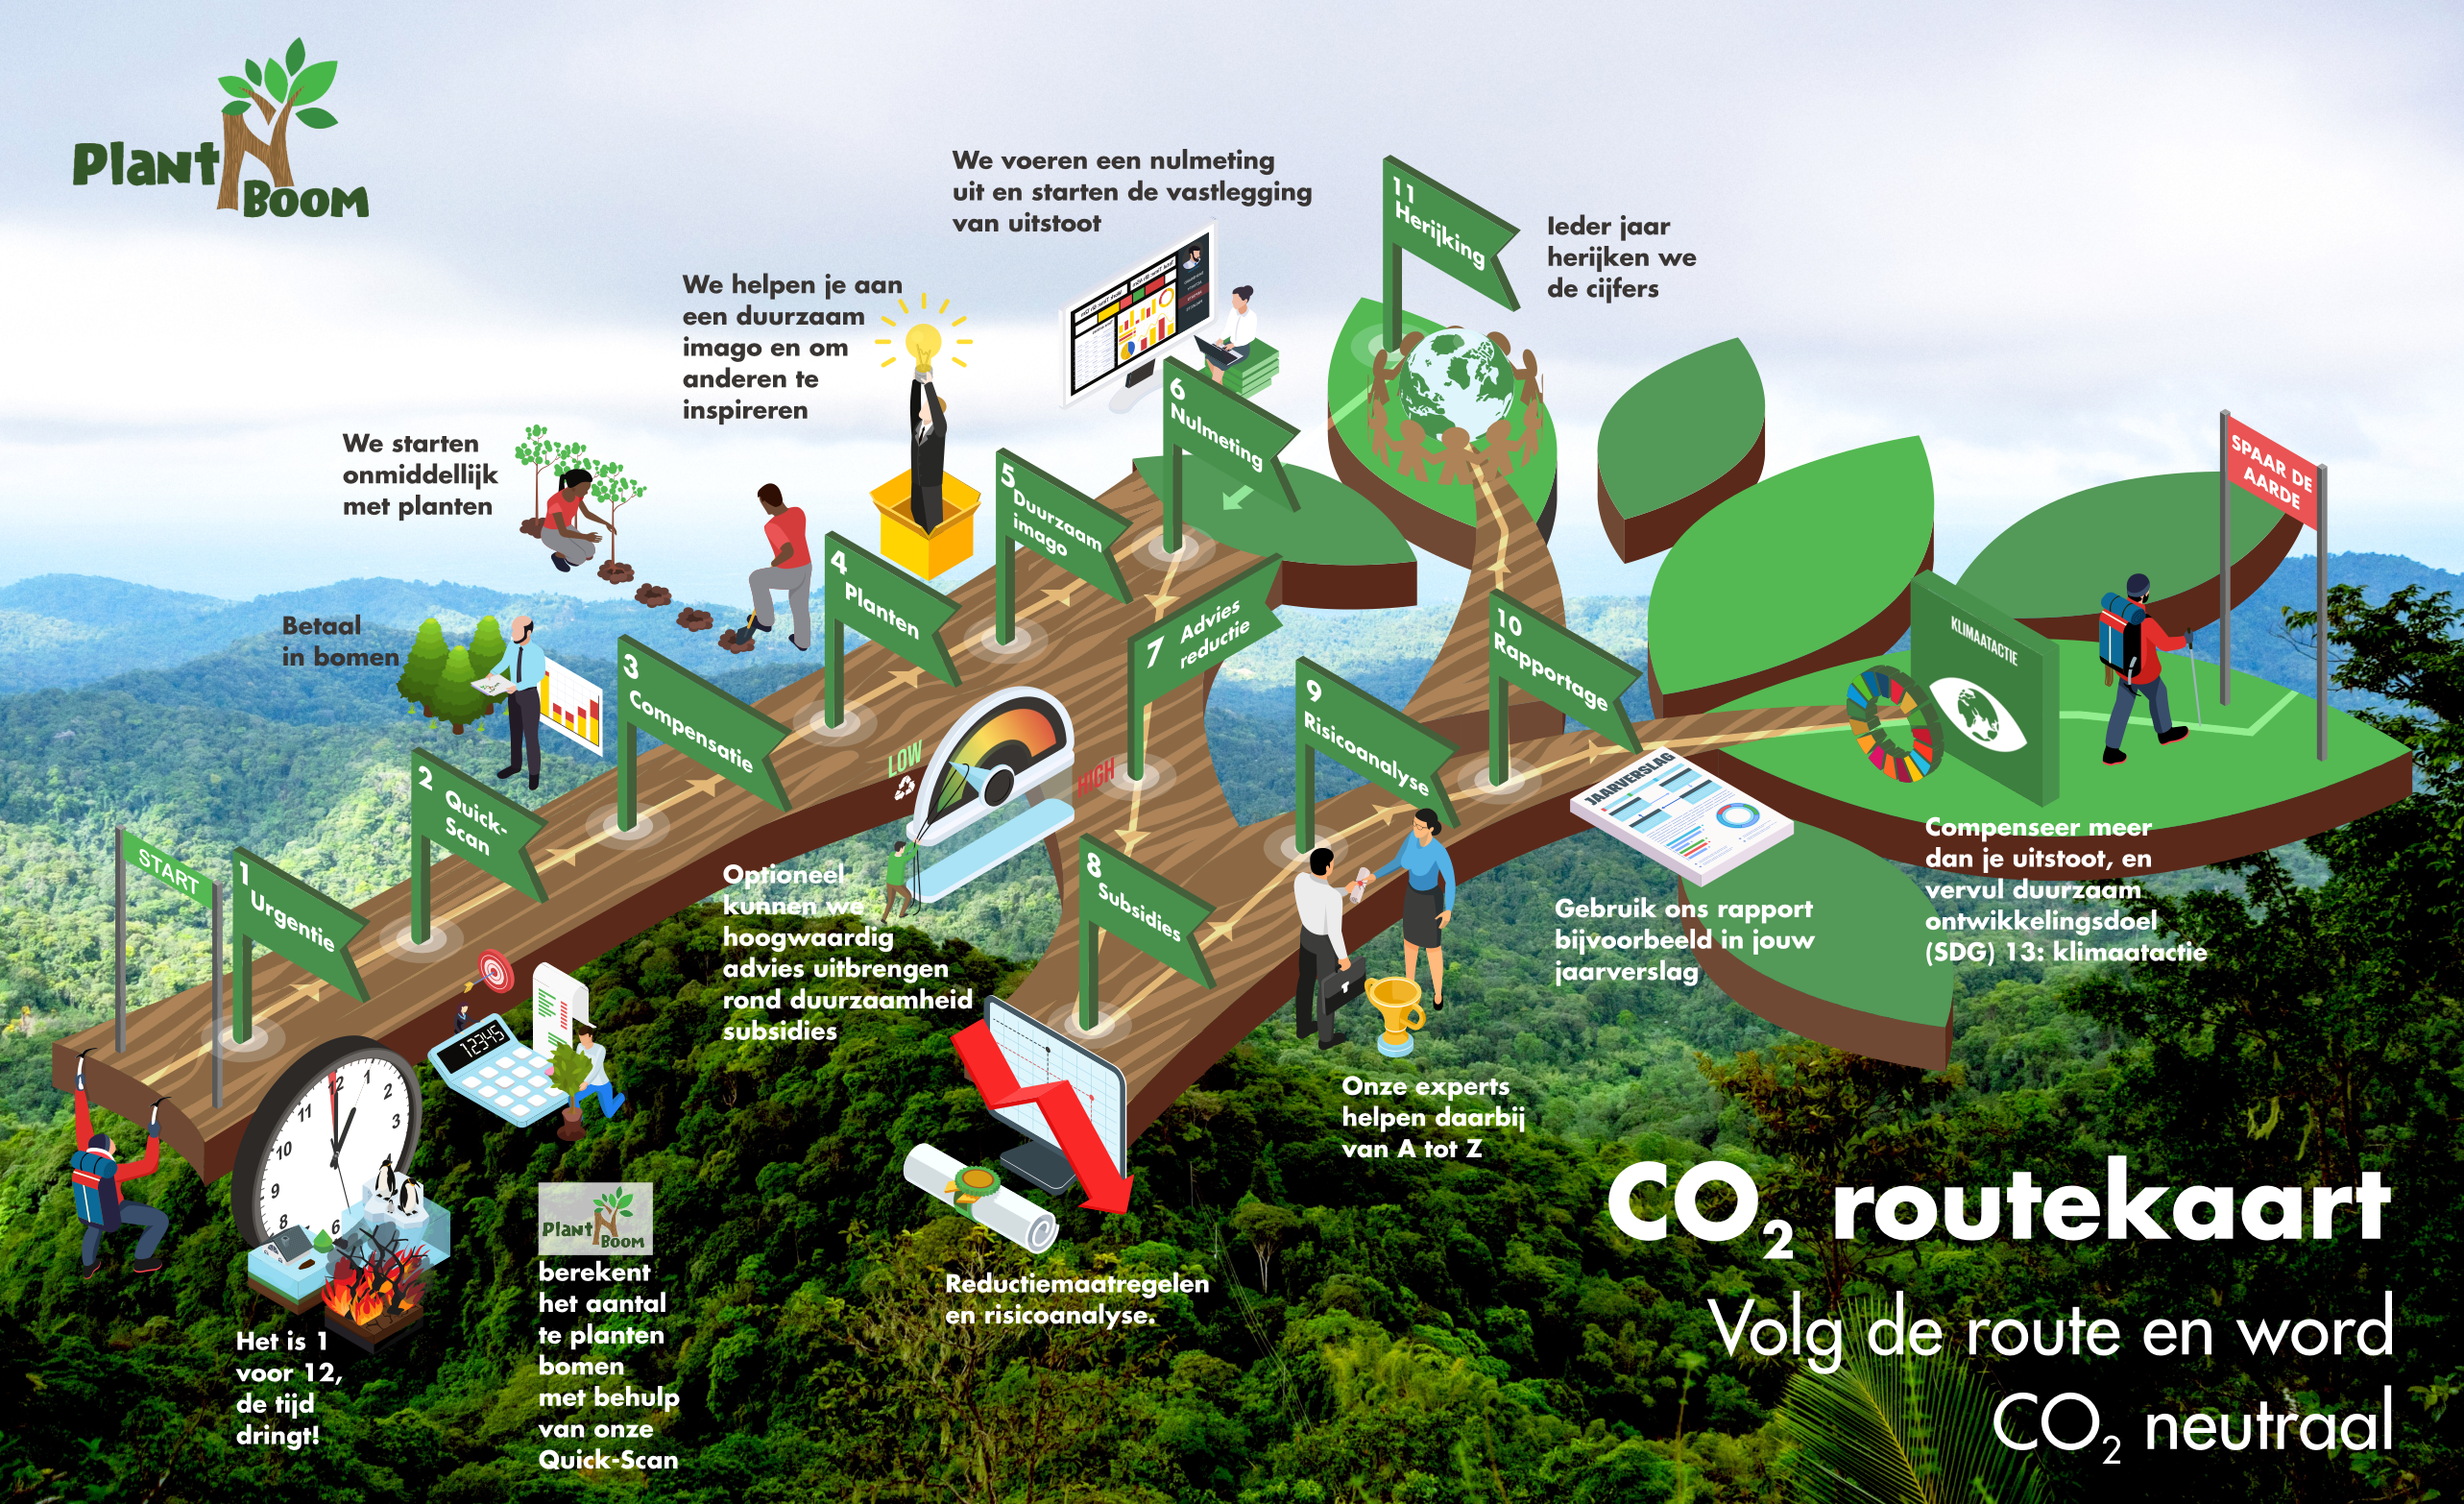 CO2 routekaart